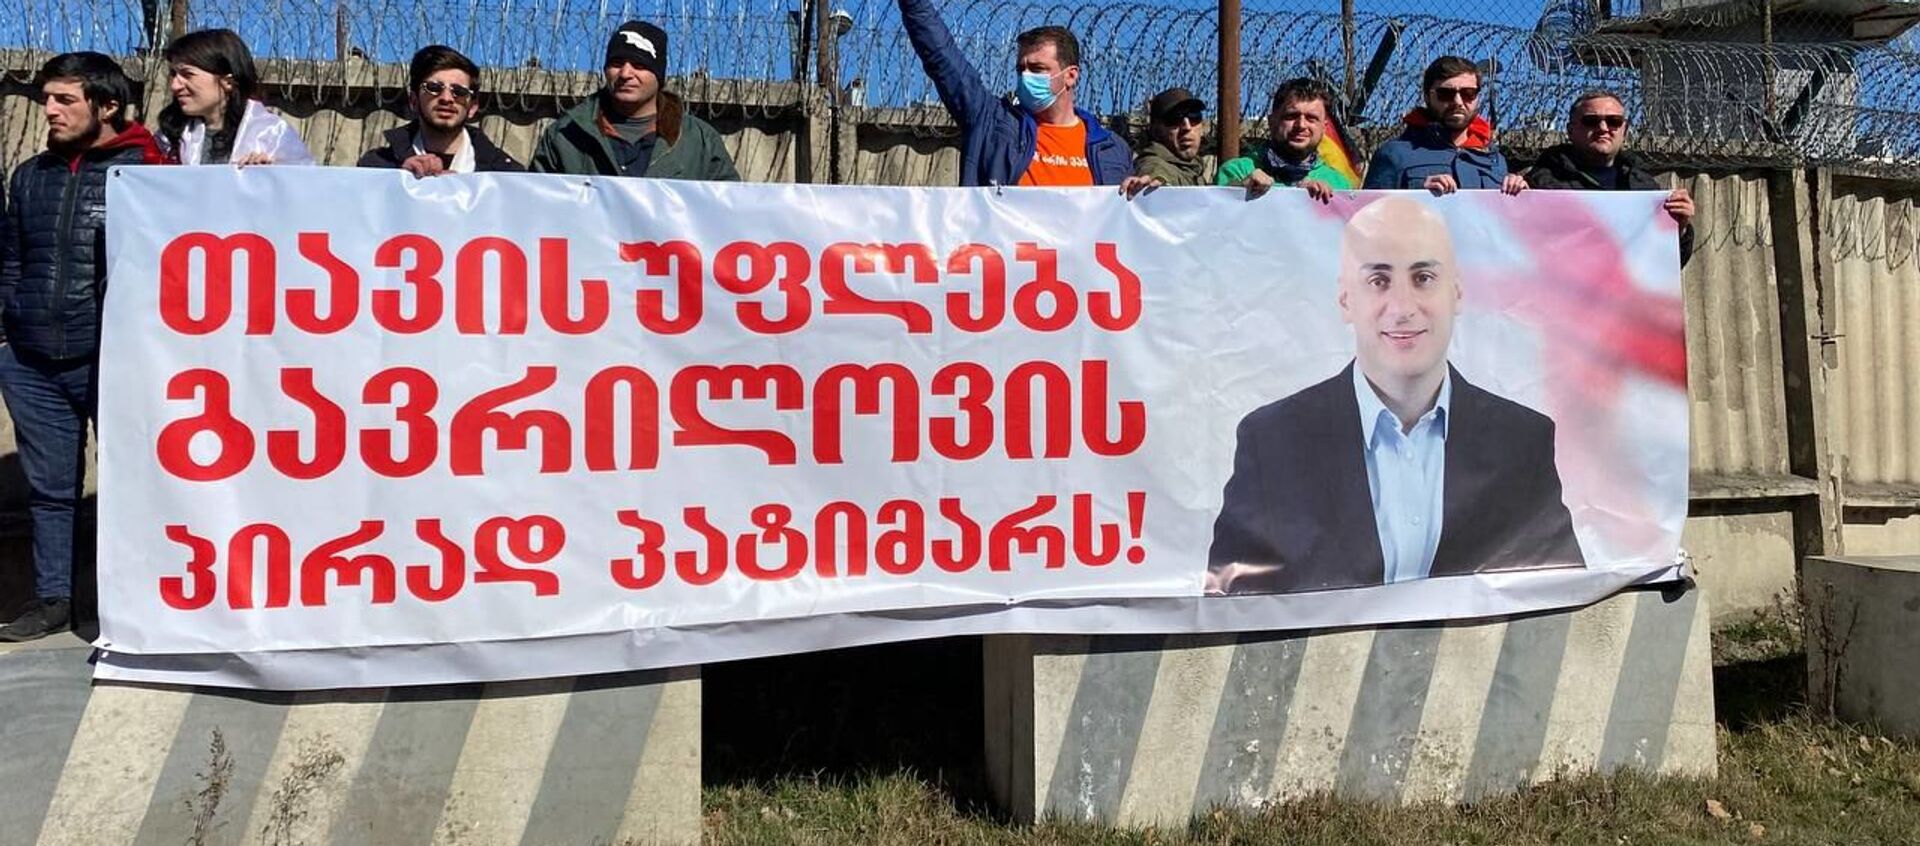 Акция протеста оппозиции у Руставской тюрьмы в поддержку Ники Мелия 4 марта 2021 года - Sputnik Грузия, 1920, 26.04.2021